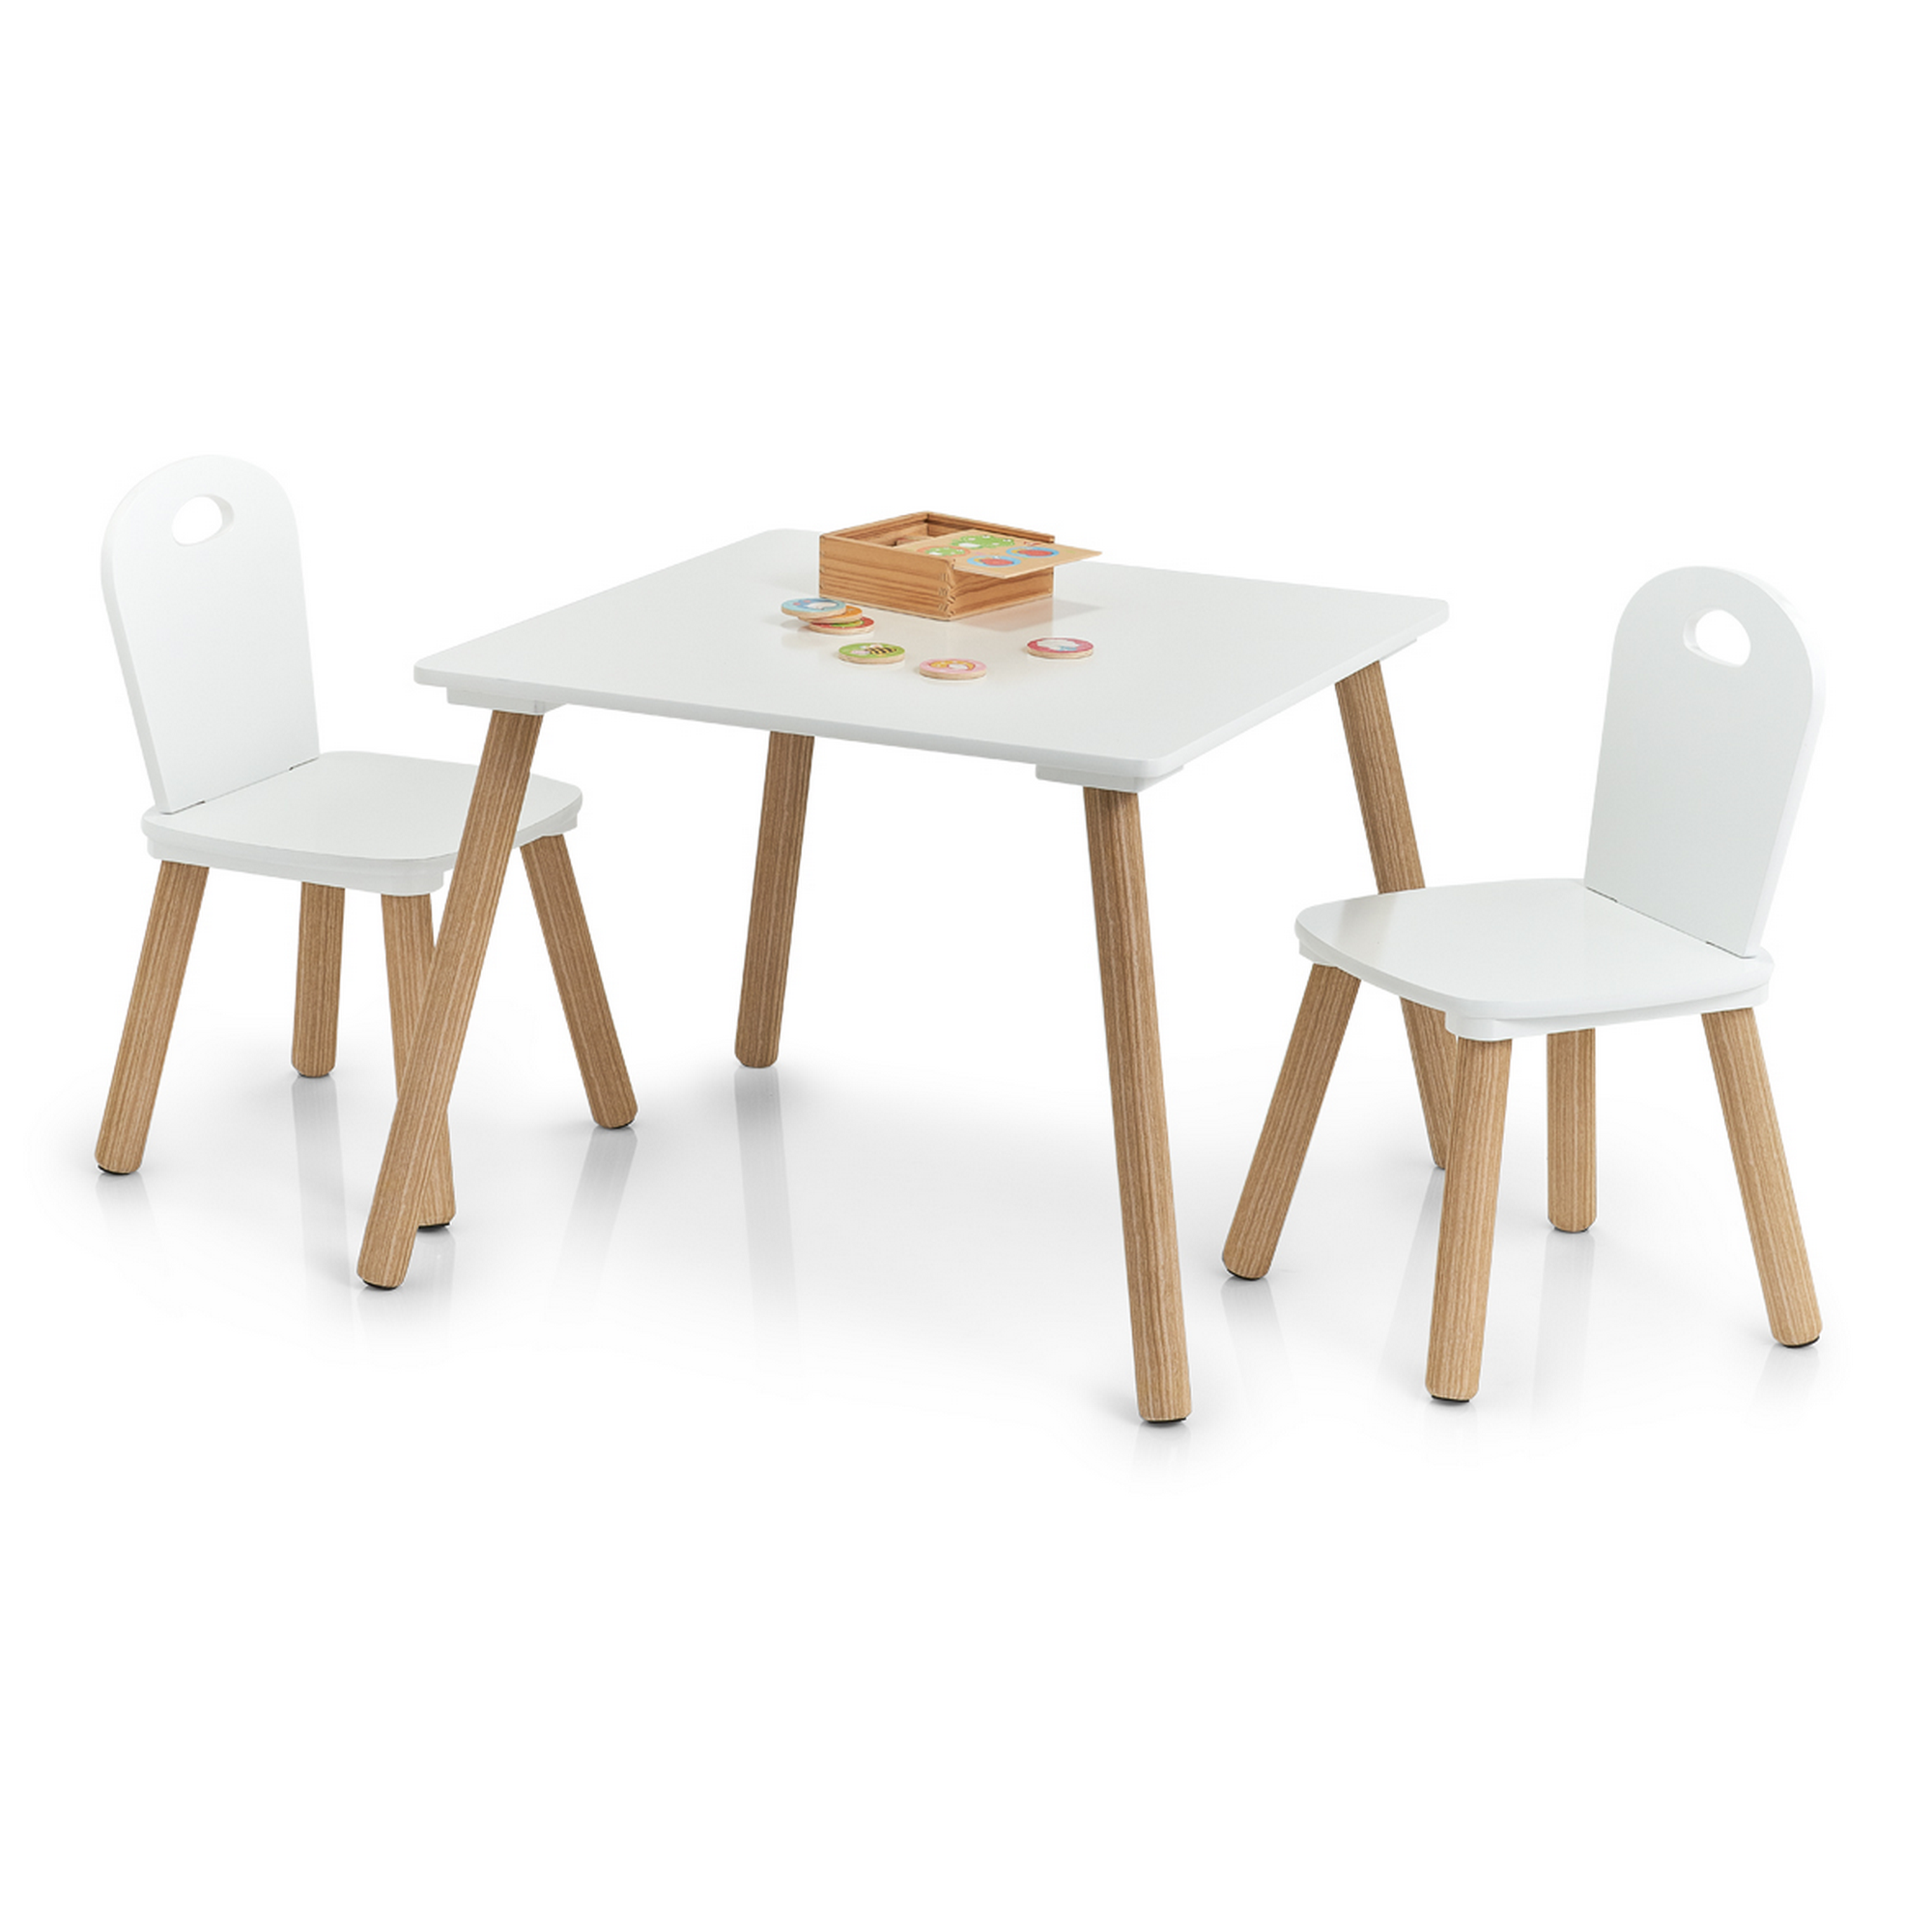 Kindersitzgruppe 'Scandi' holzfarben/weiß 3-teilig + product picture